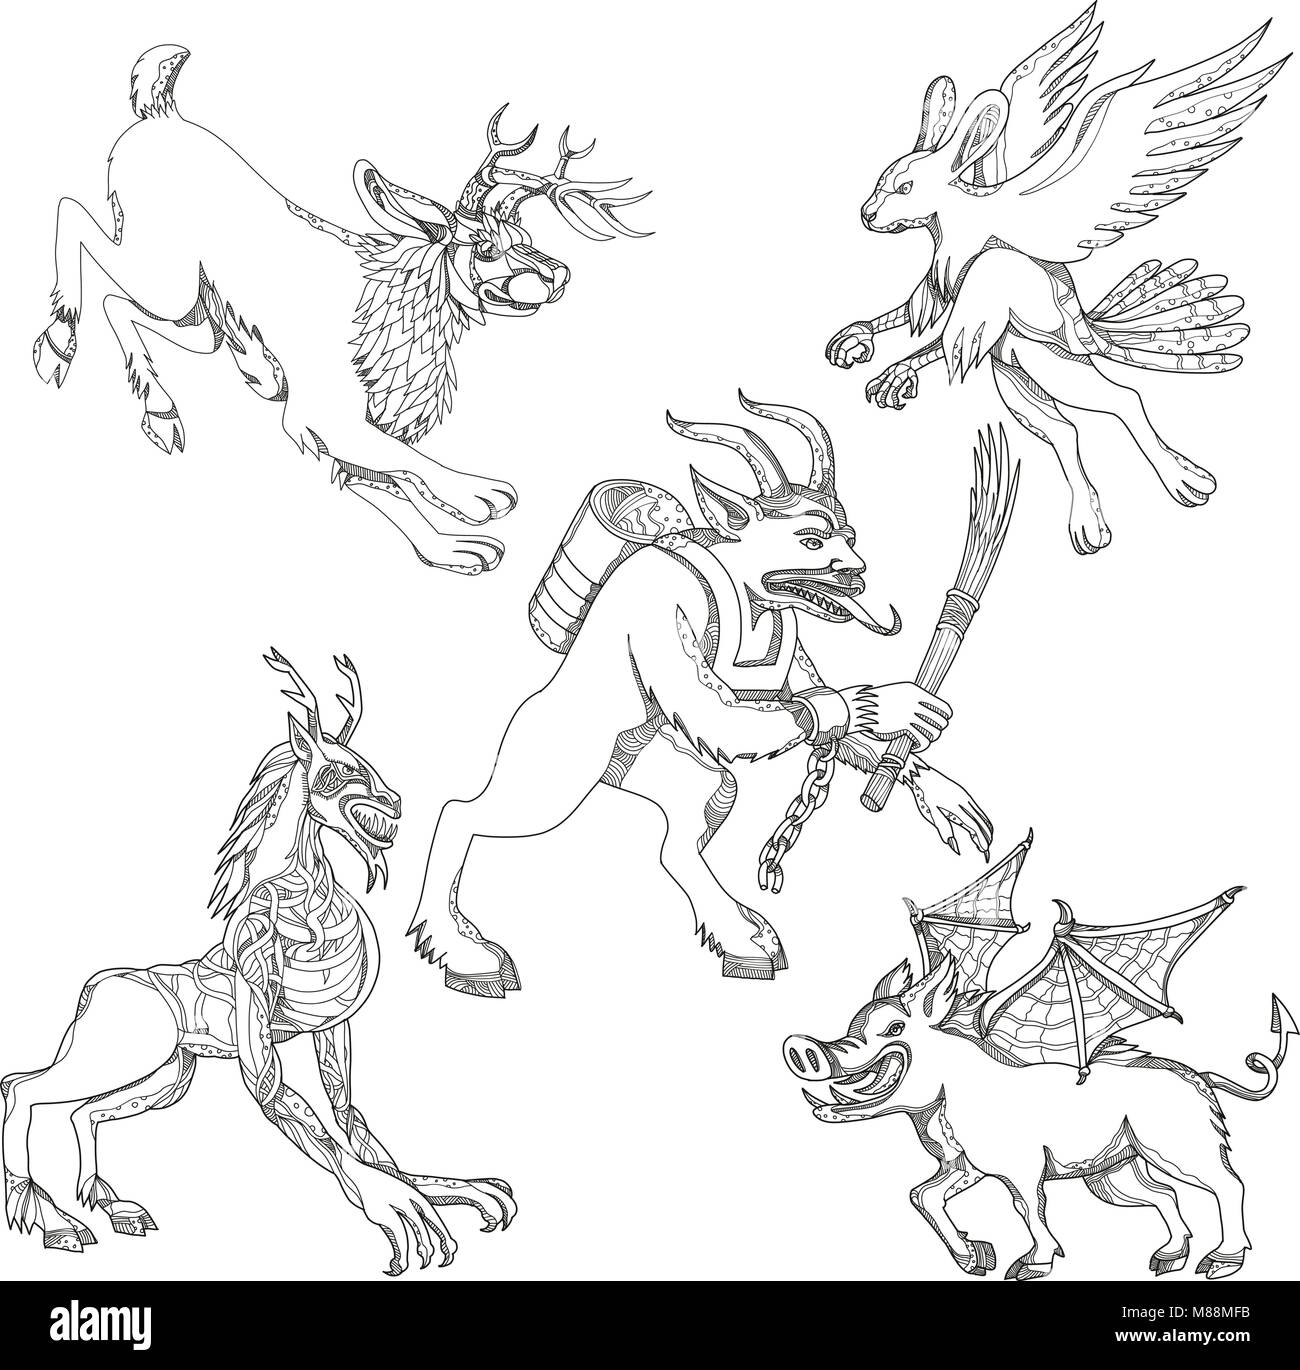 Eine Sammlung von Doodle kunst Illustrationen, umfasst die folgenden Fabelwesen aus Legende Folklore; Jackalope, krampus, skraver, wendigo. Stock Vektor